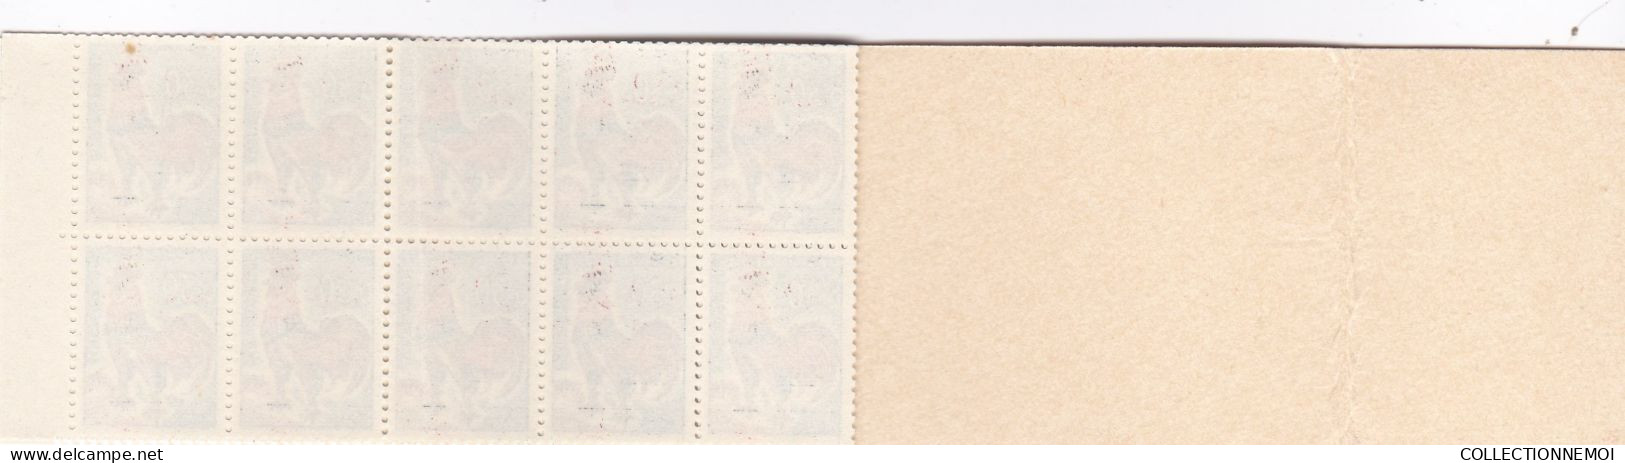 carnet COQ 30 centimes ,, 2 carnets de 20 timbres ,,adherence sur 1,à voir et collé un peu de travers